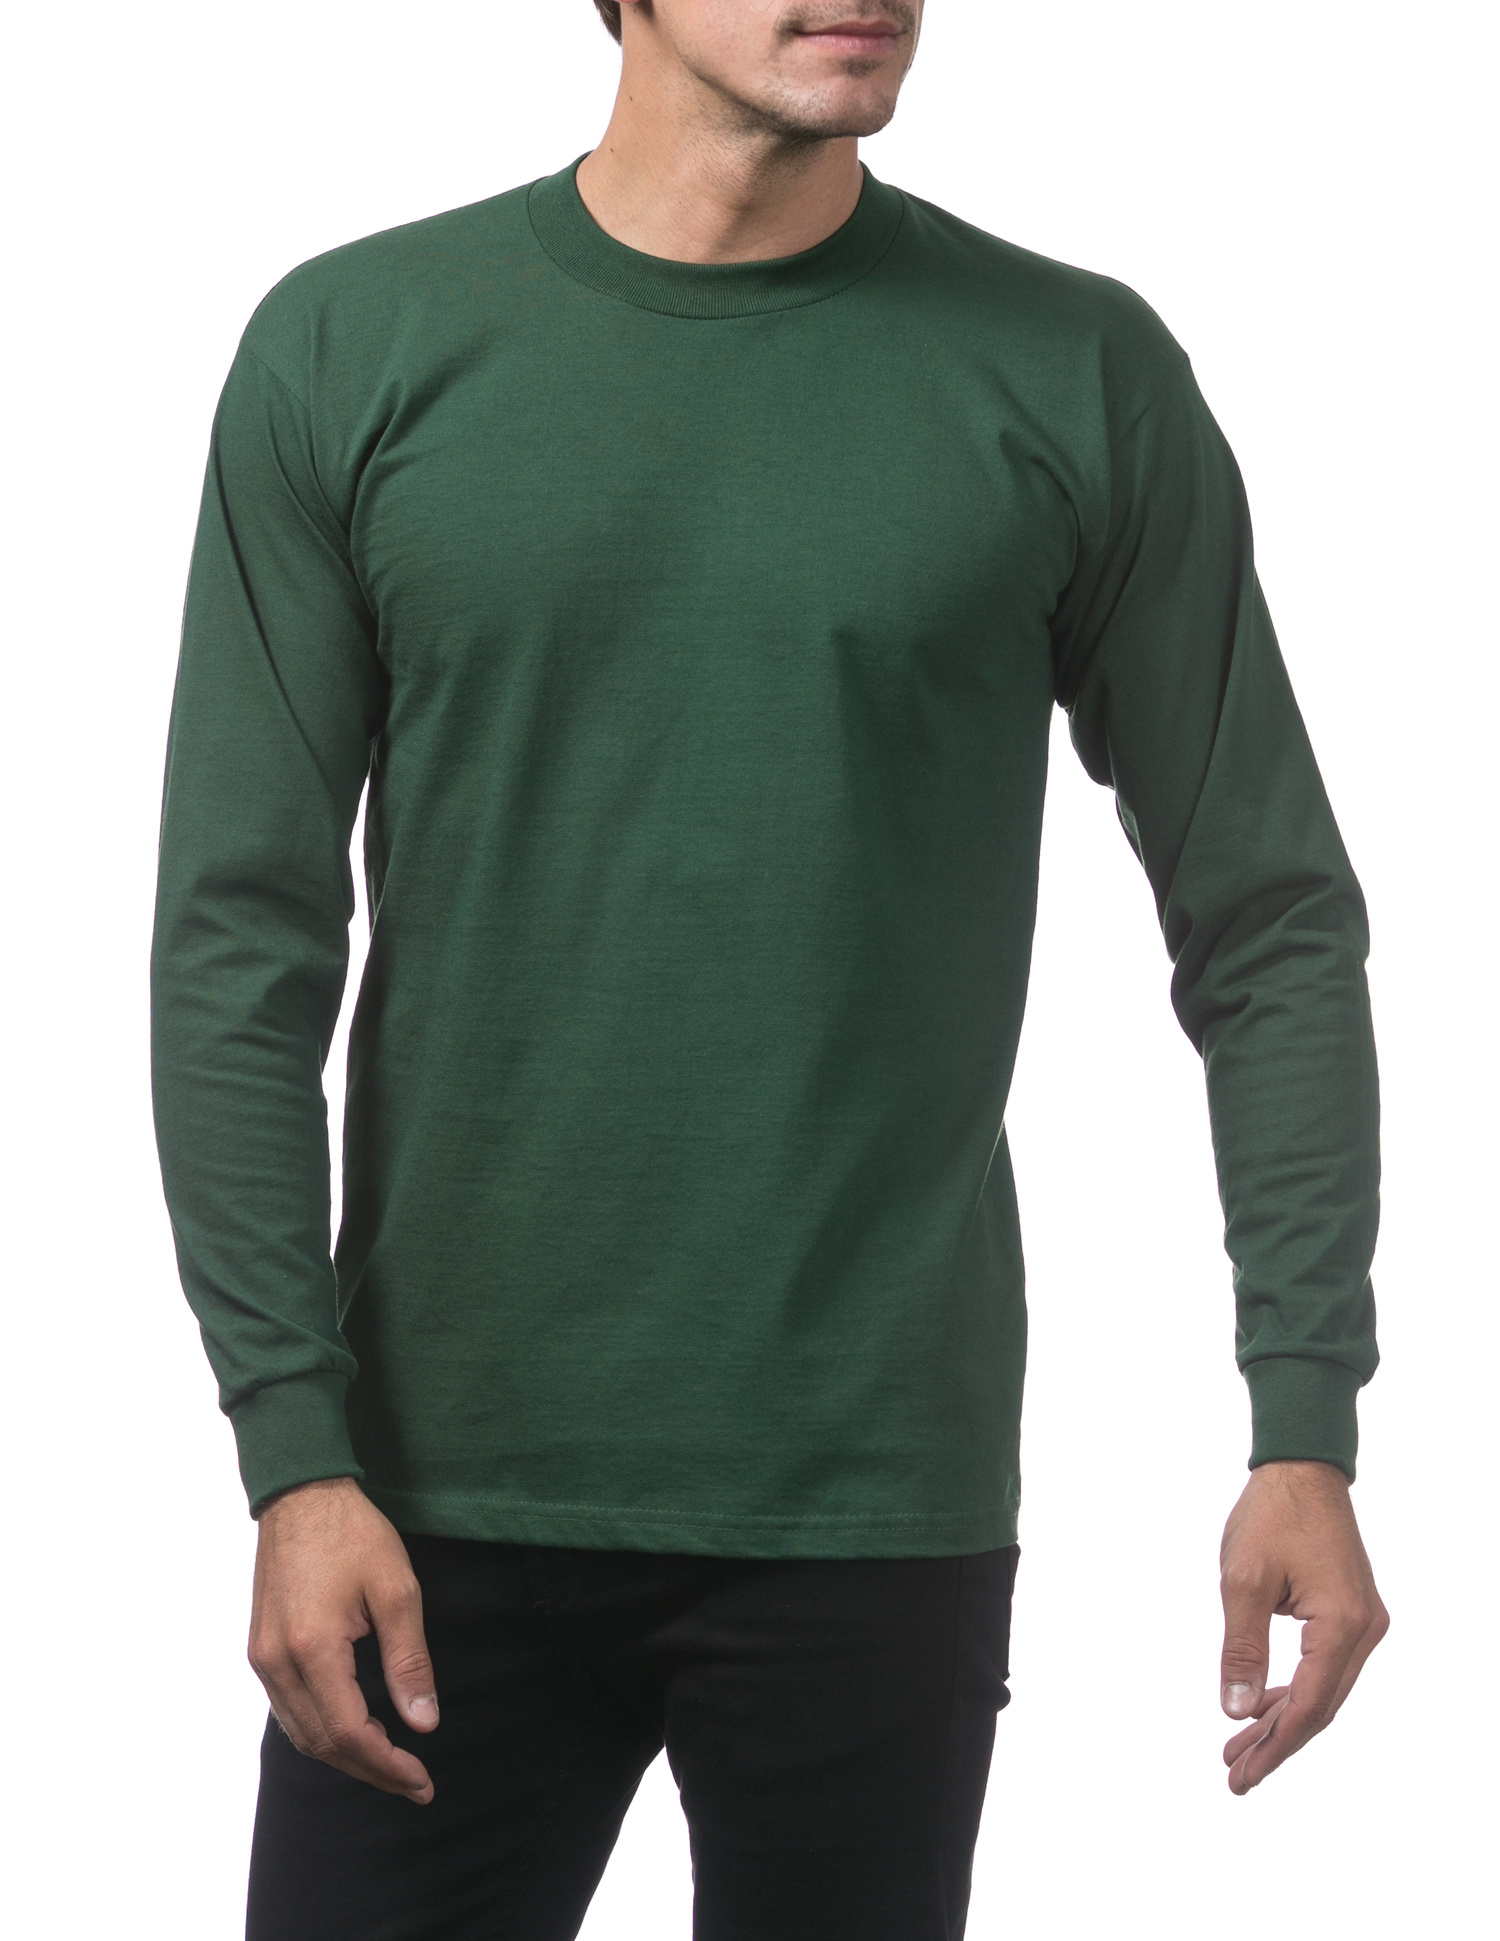 Cotton Shirts Heavyweight Sleeve Neck GREEN T-Shirt 114 FOREST Long - Crew